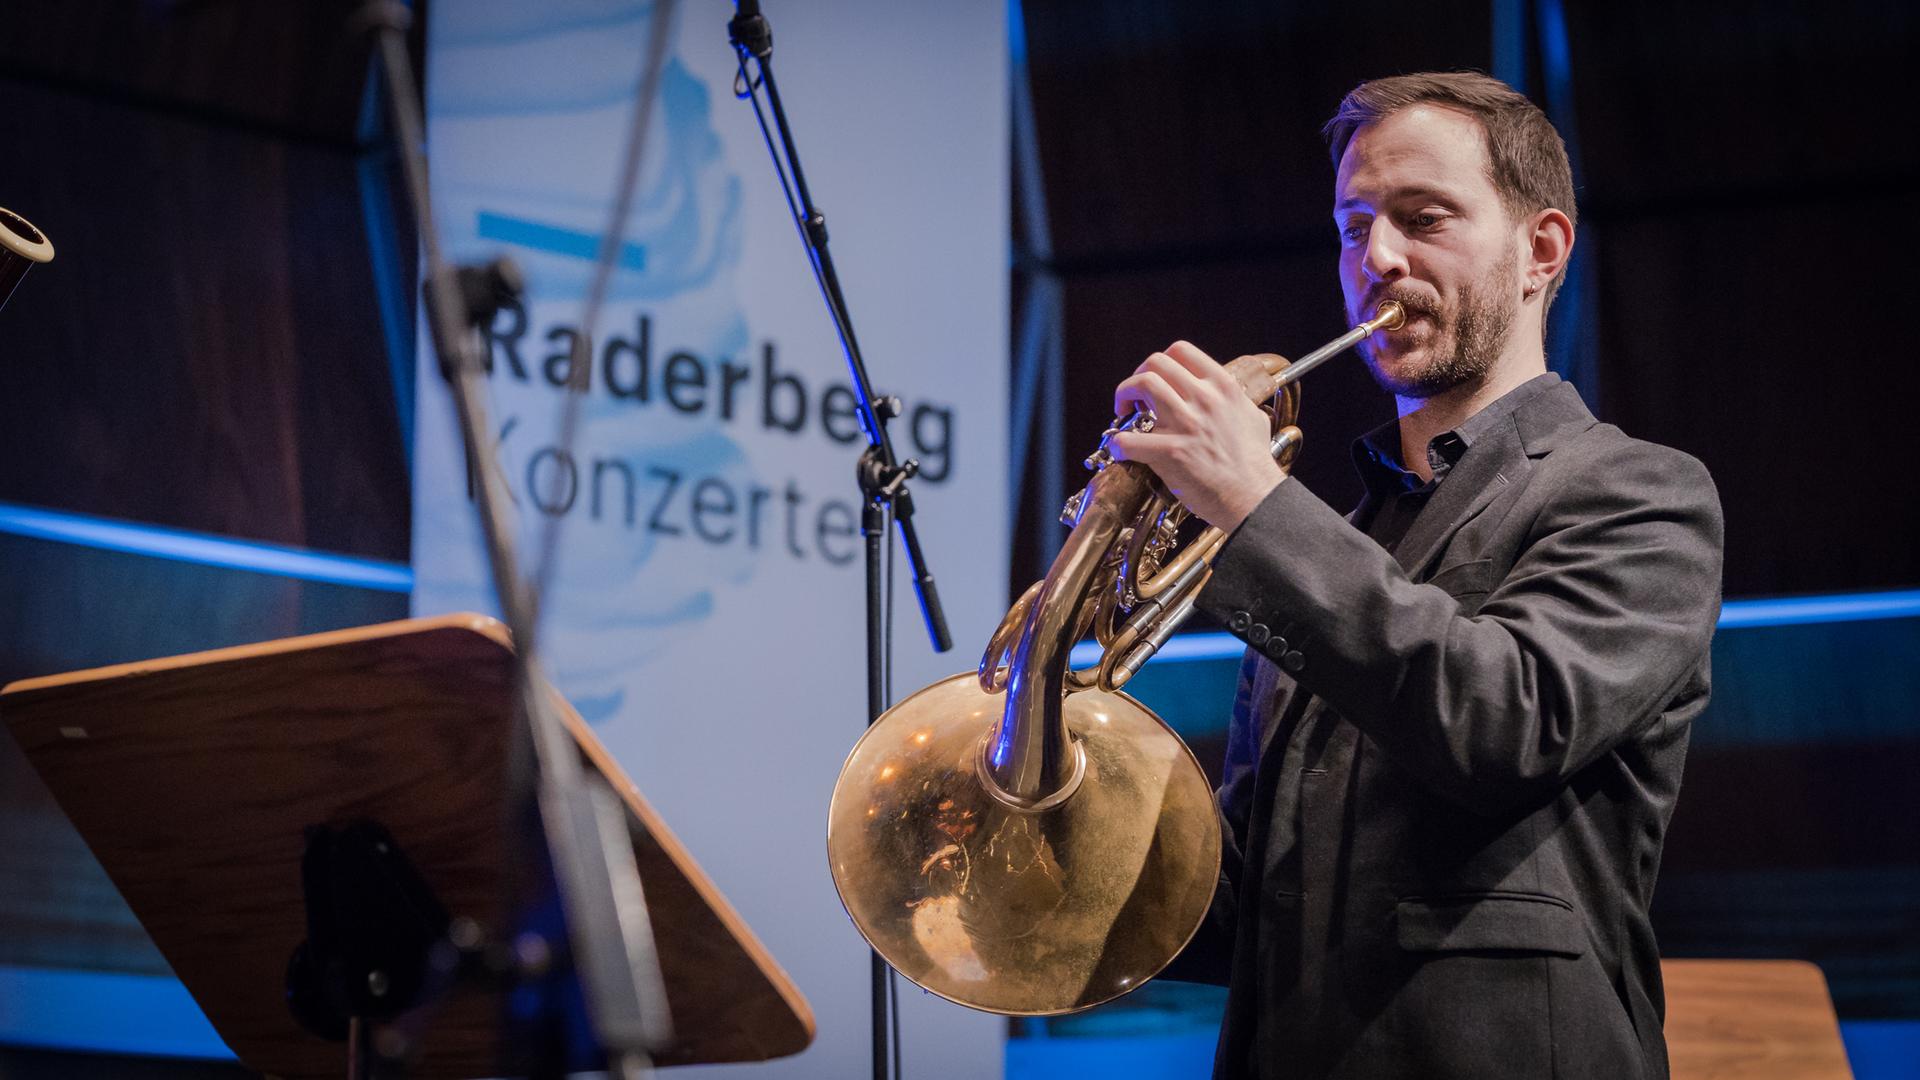 Ein Hornist spielt in einem holzvertäfelten Saal, der bläulich angestrahlt wird. Im Hintergrund hängt ein großes Plakat mit der Aufschrift "Raderberg Konzerte - Deutschlandfunk".